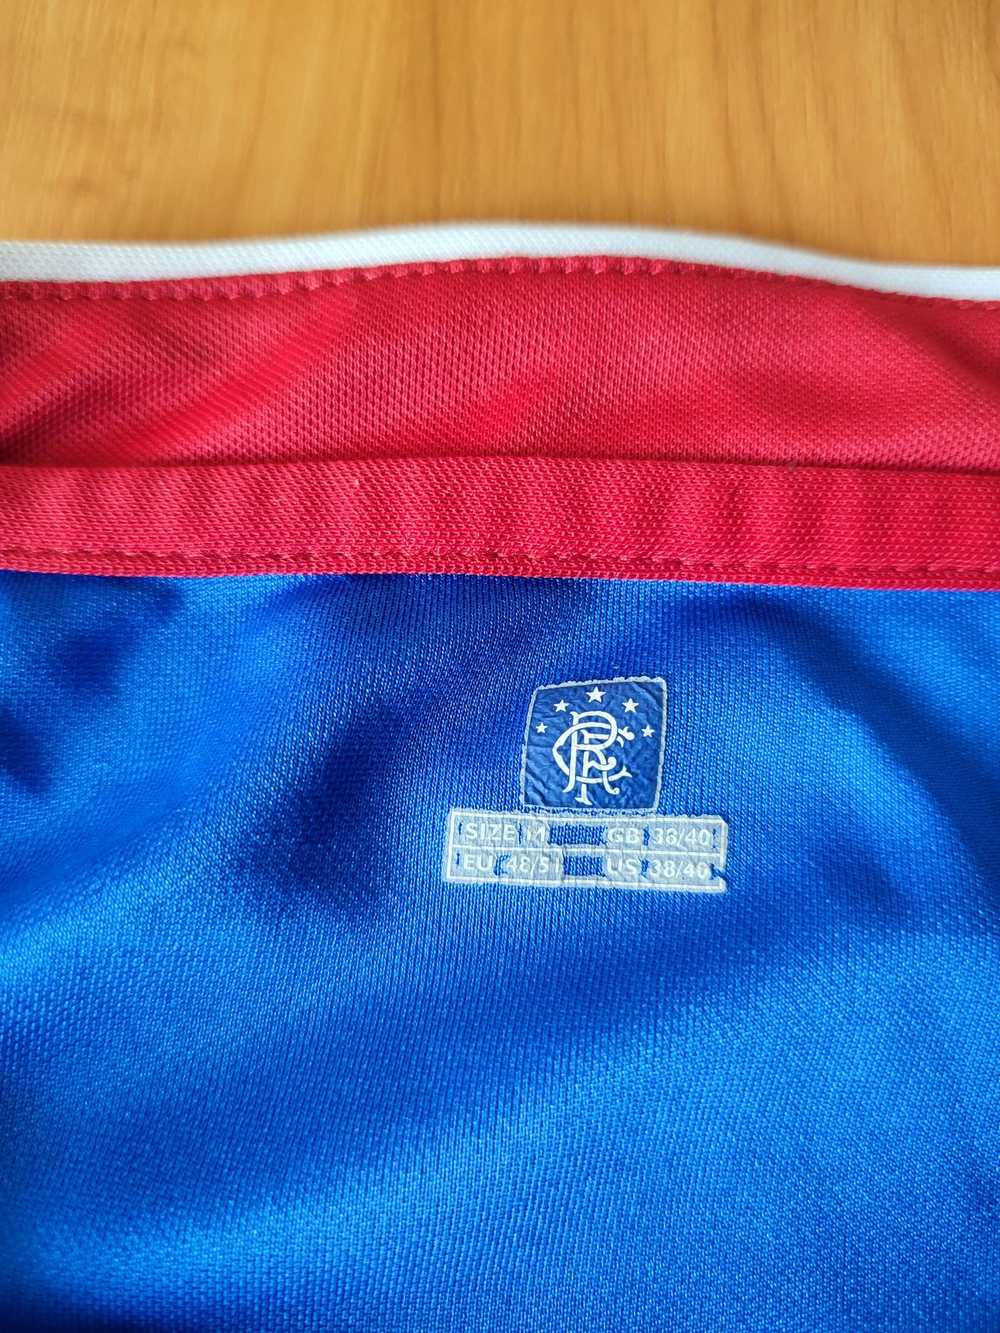 Soccer Jersey × Umbro × Vintage Glasgow Rangers 2… - image 5